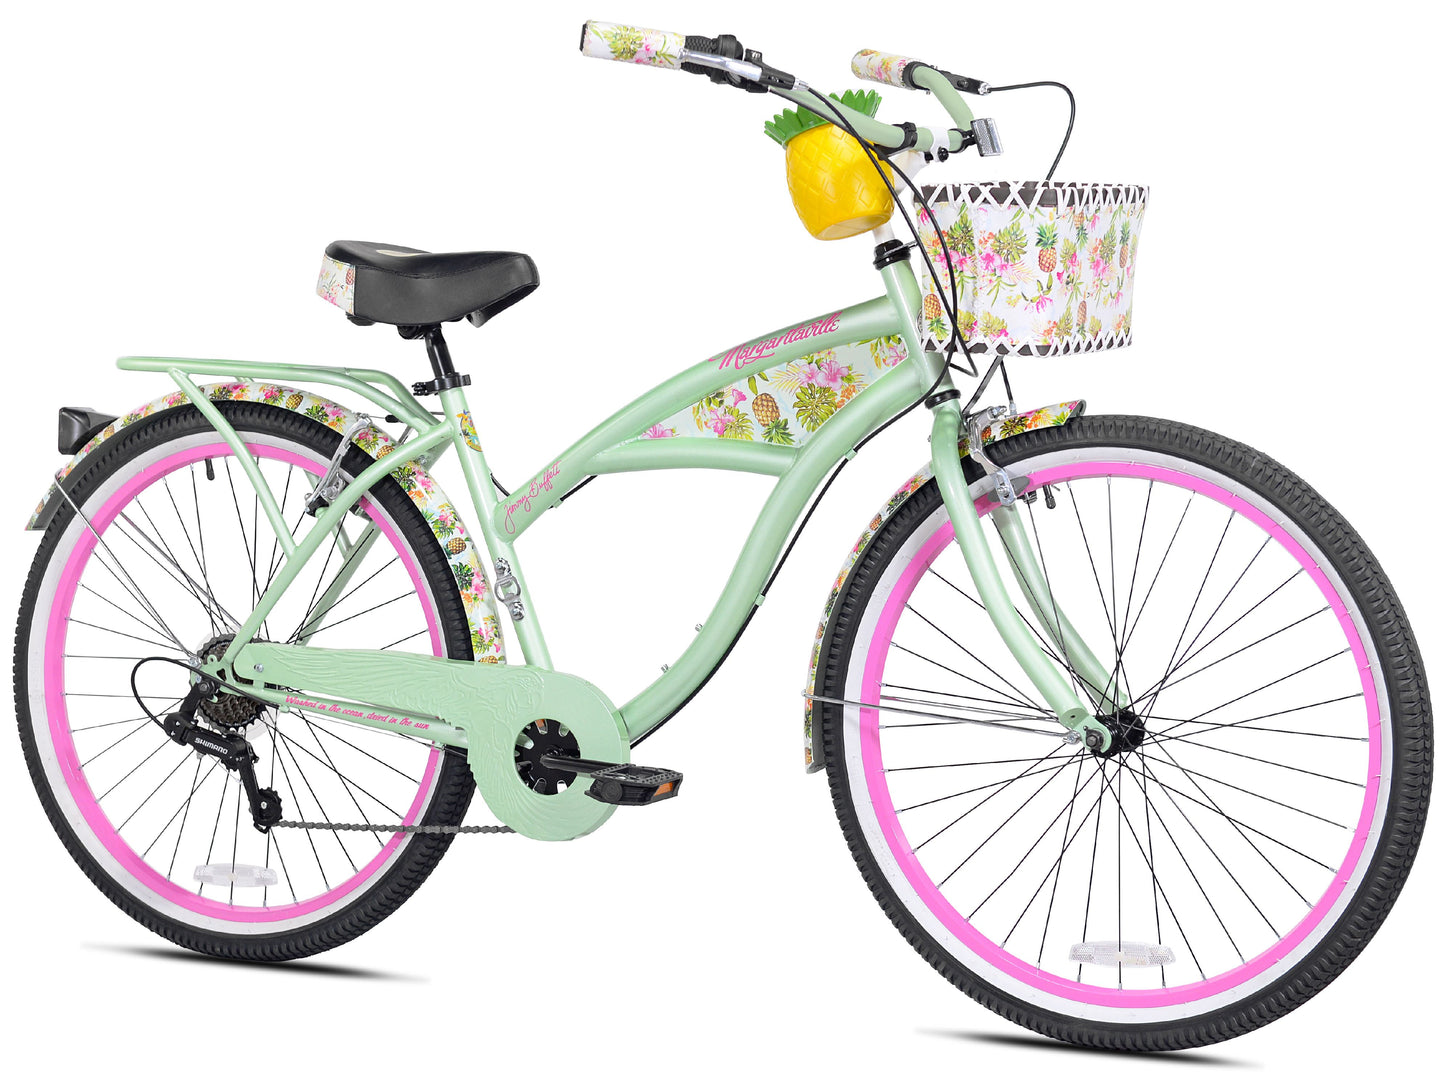 Margaritaville 26" Pineapple Women'S Cruiser Bike, Green